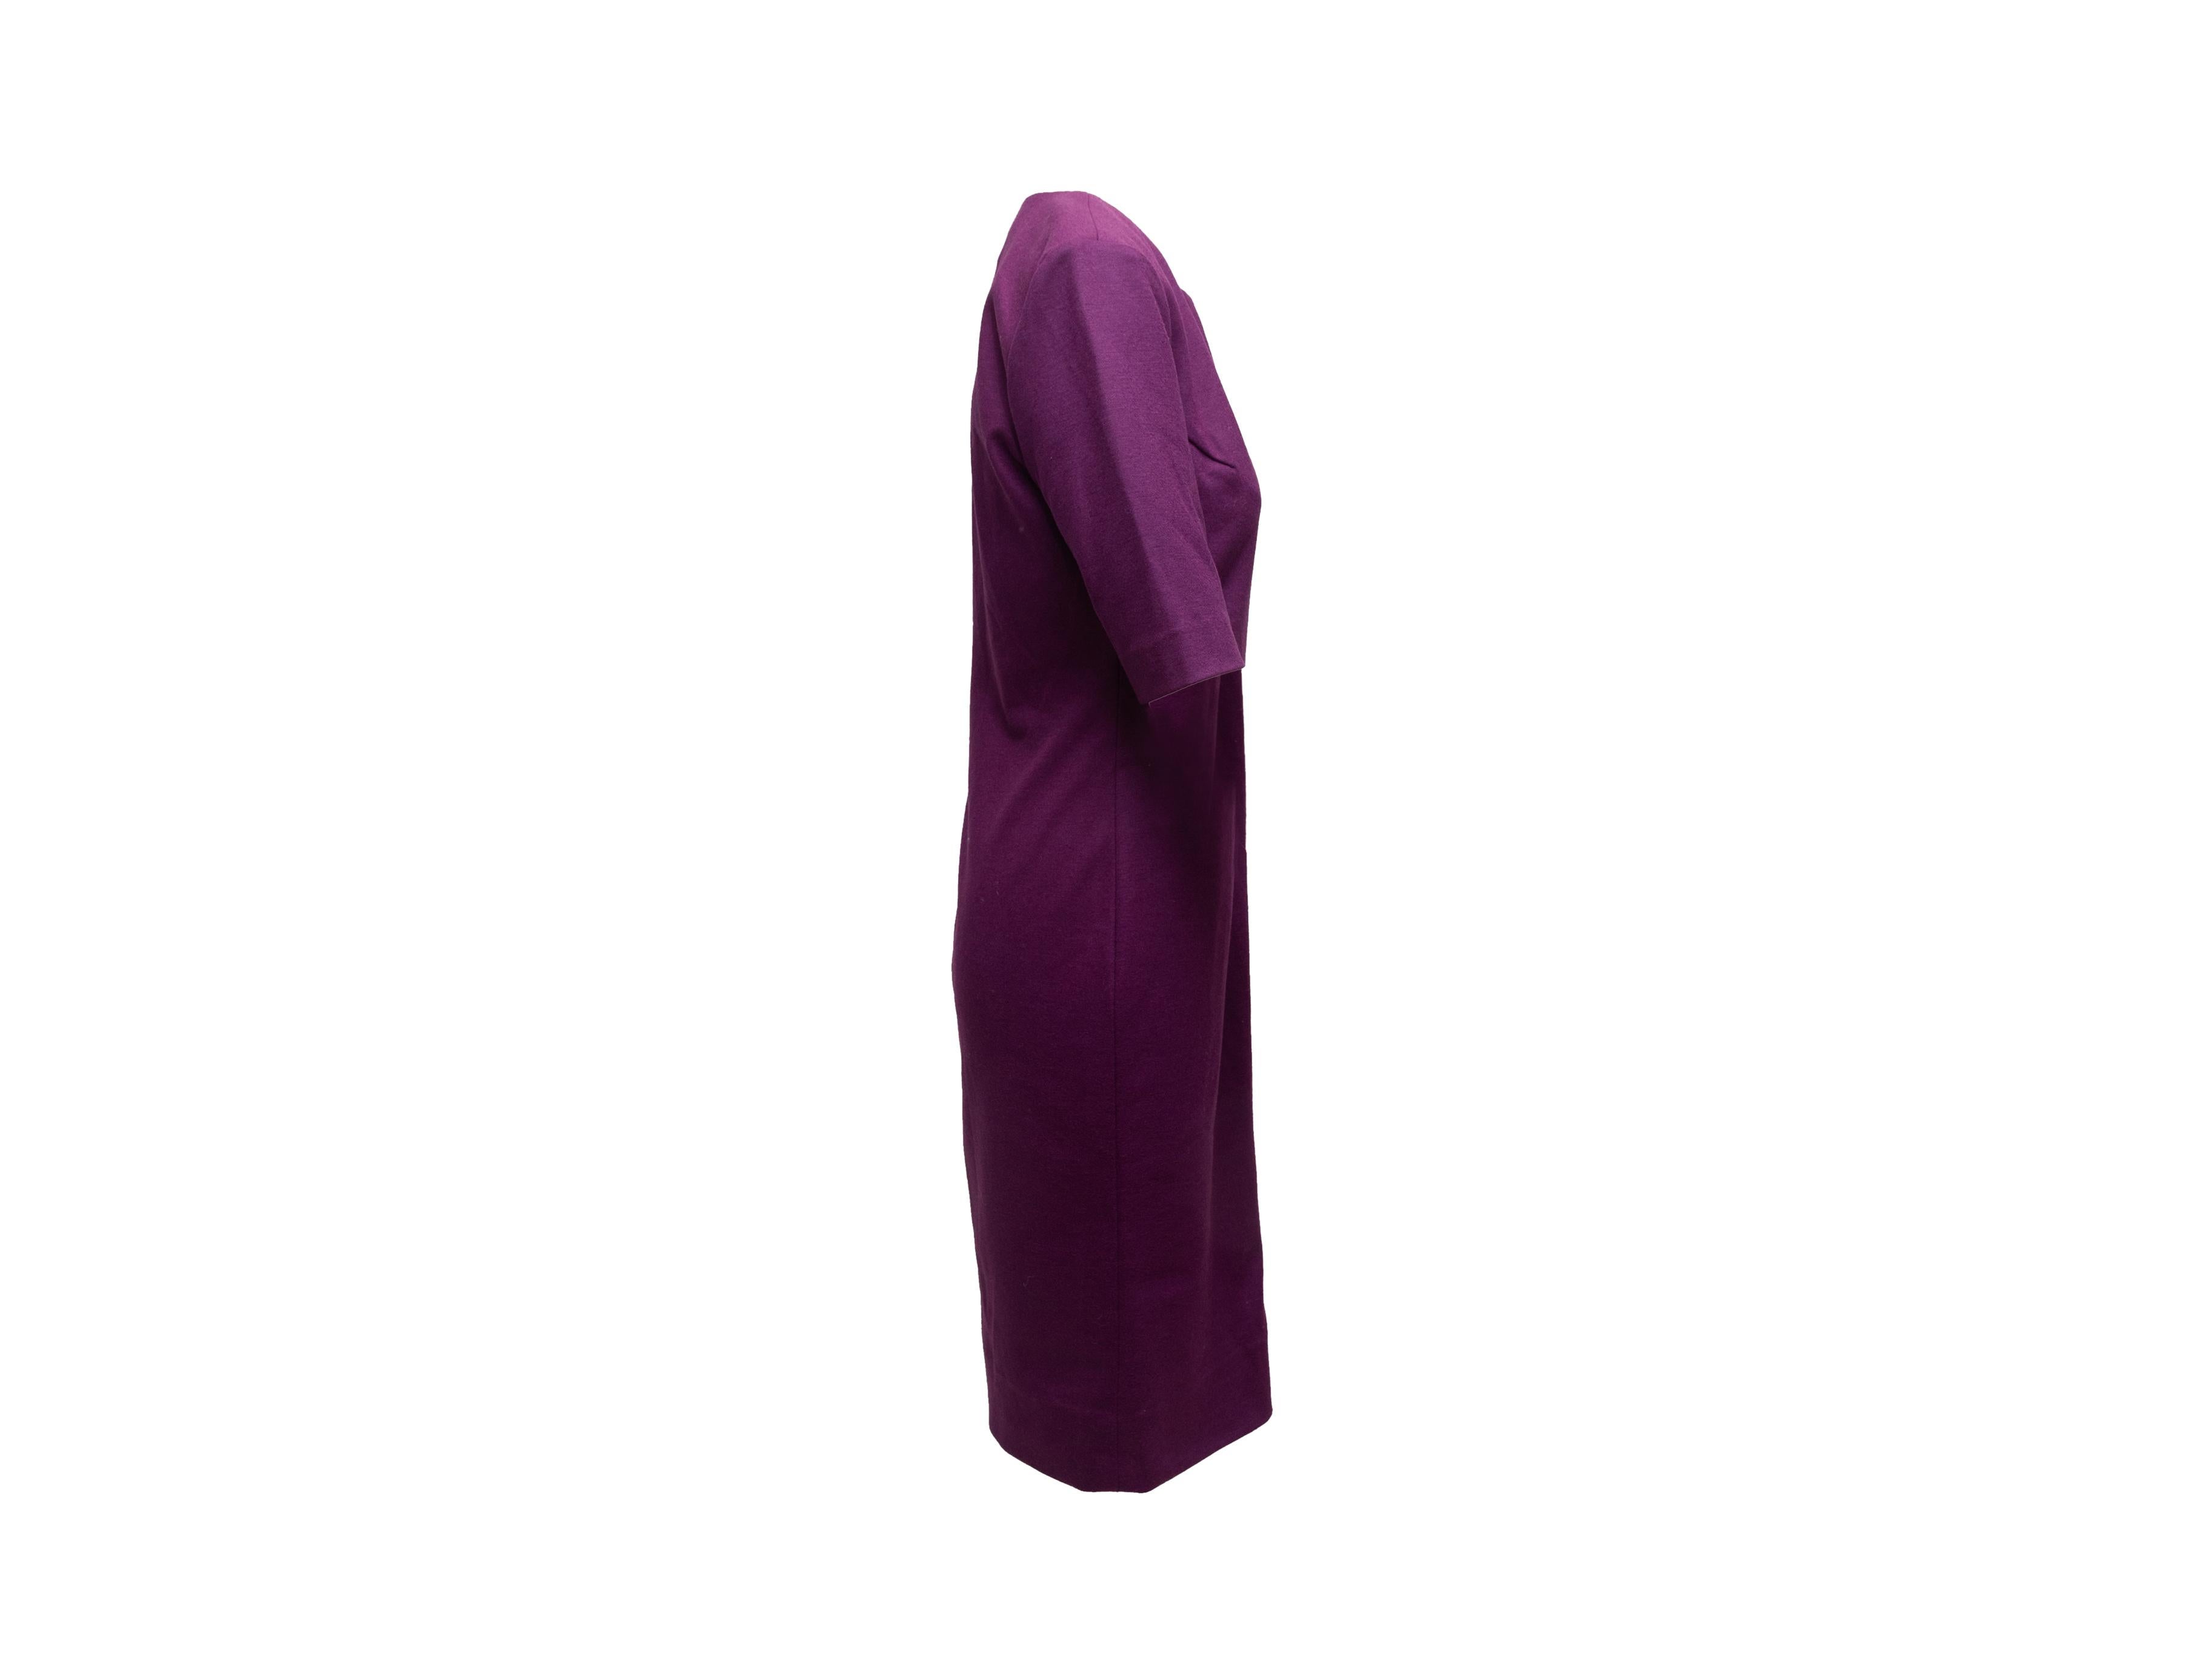 Product details: Purple wool 'Aurora' dress by Diane Von Furstenberg. V-neck. Short sleeves. 36